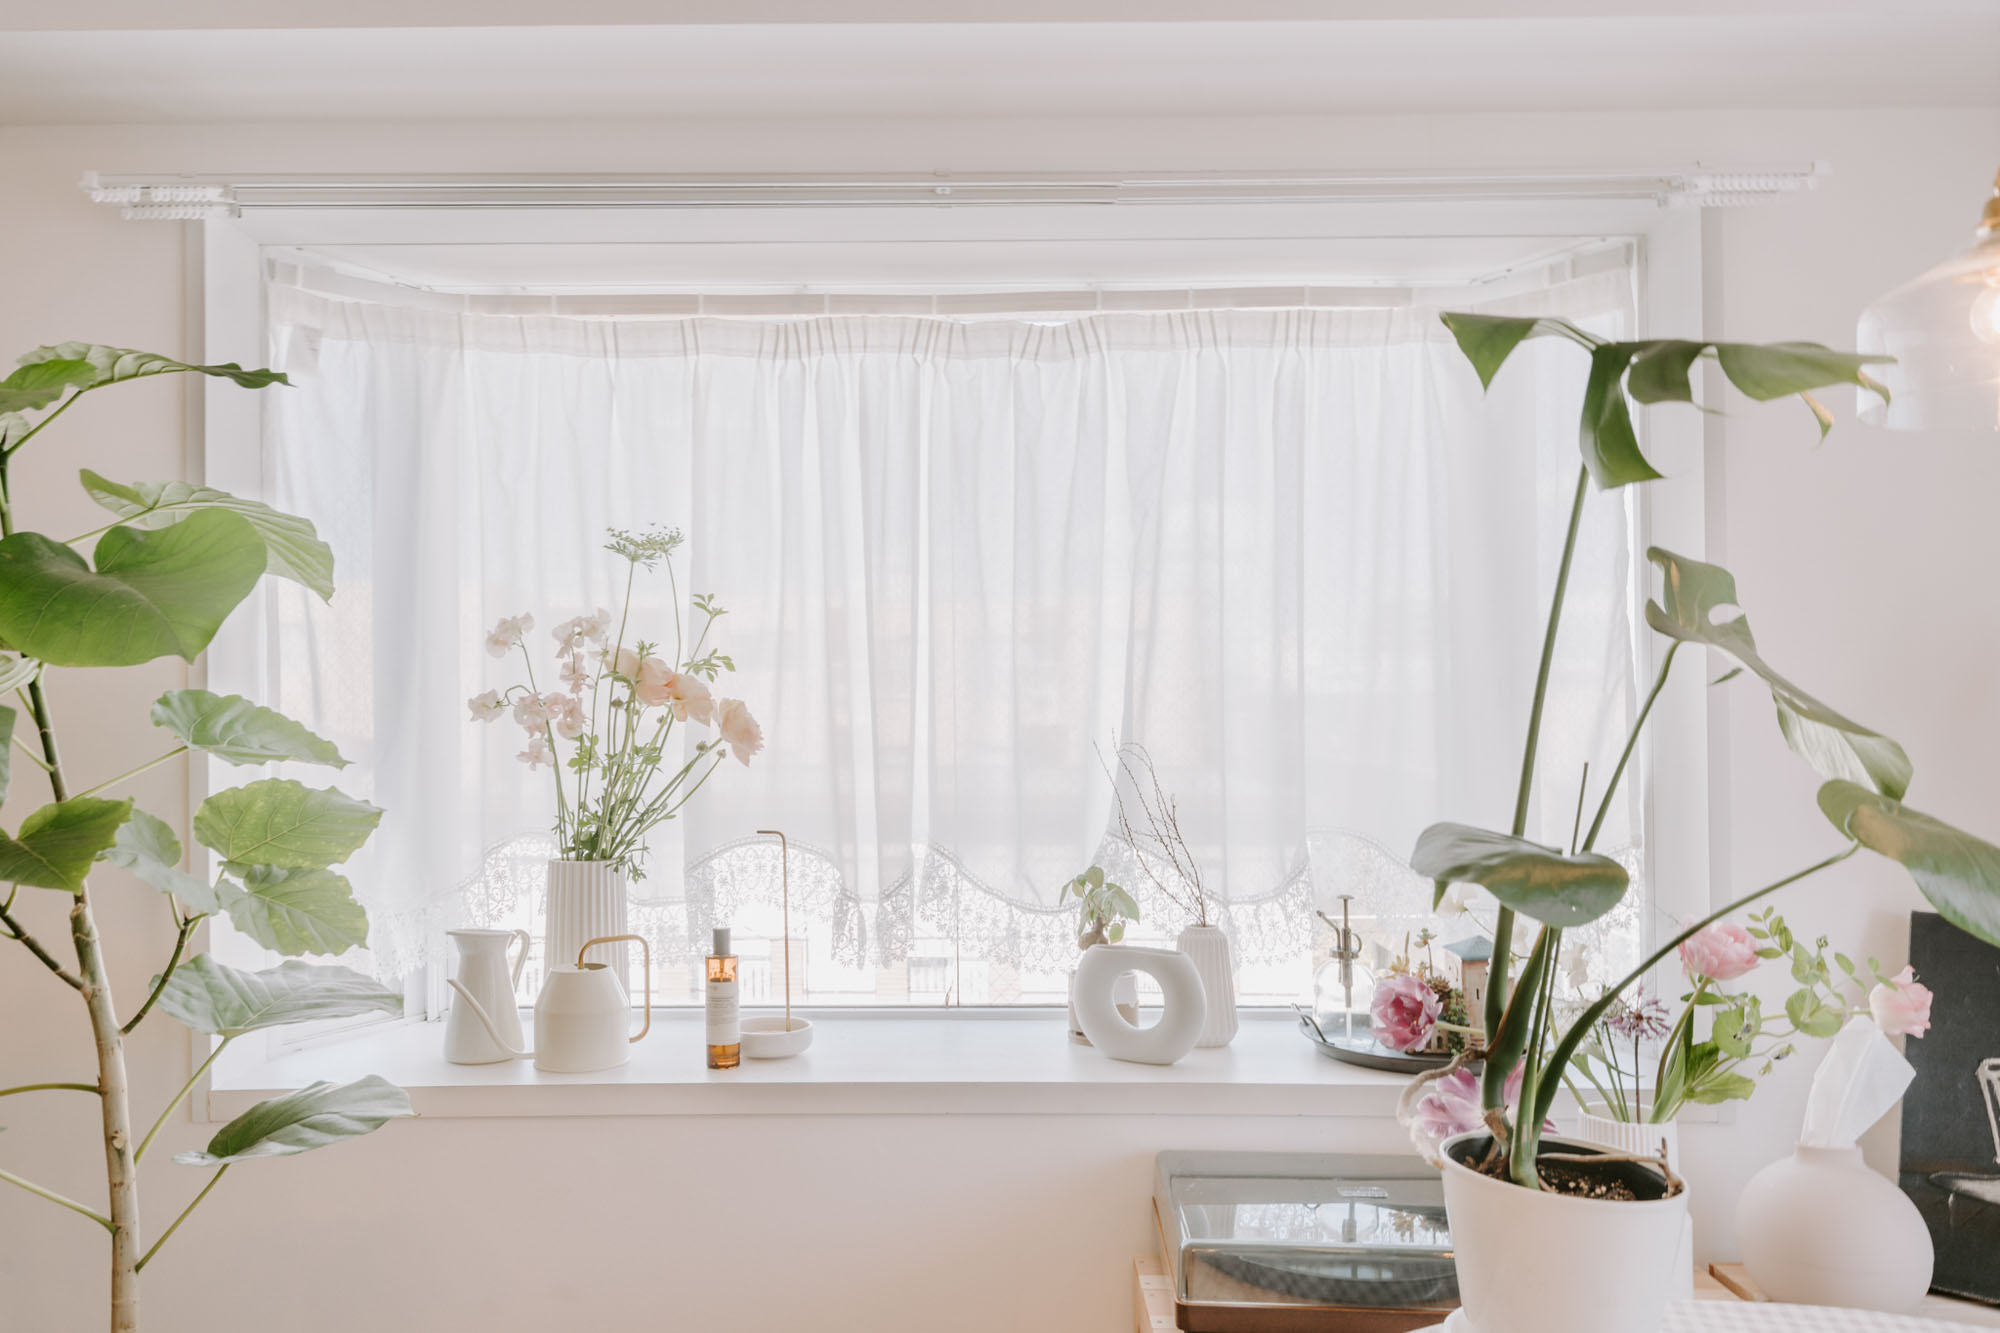 たくさんの植物や白で揃えたオブジェを集めて、絵になる雰囲気にまとめられている出窓のスペース。